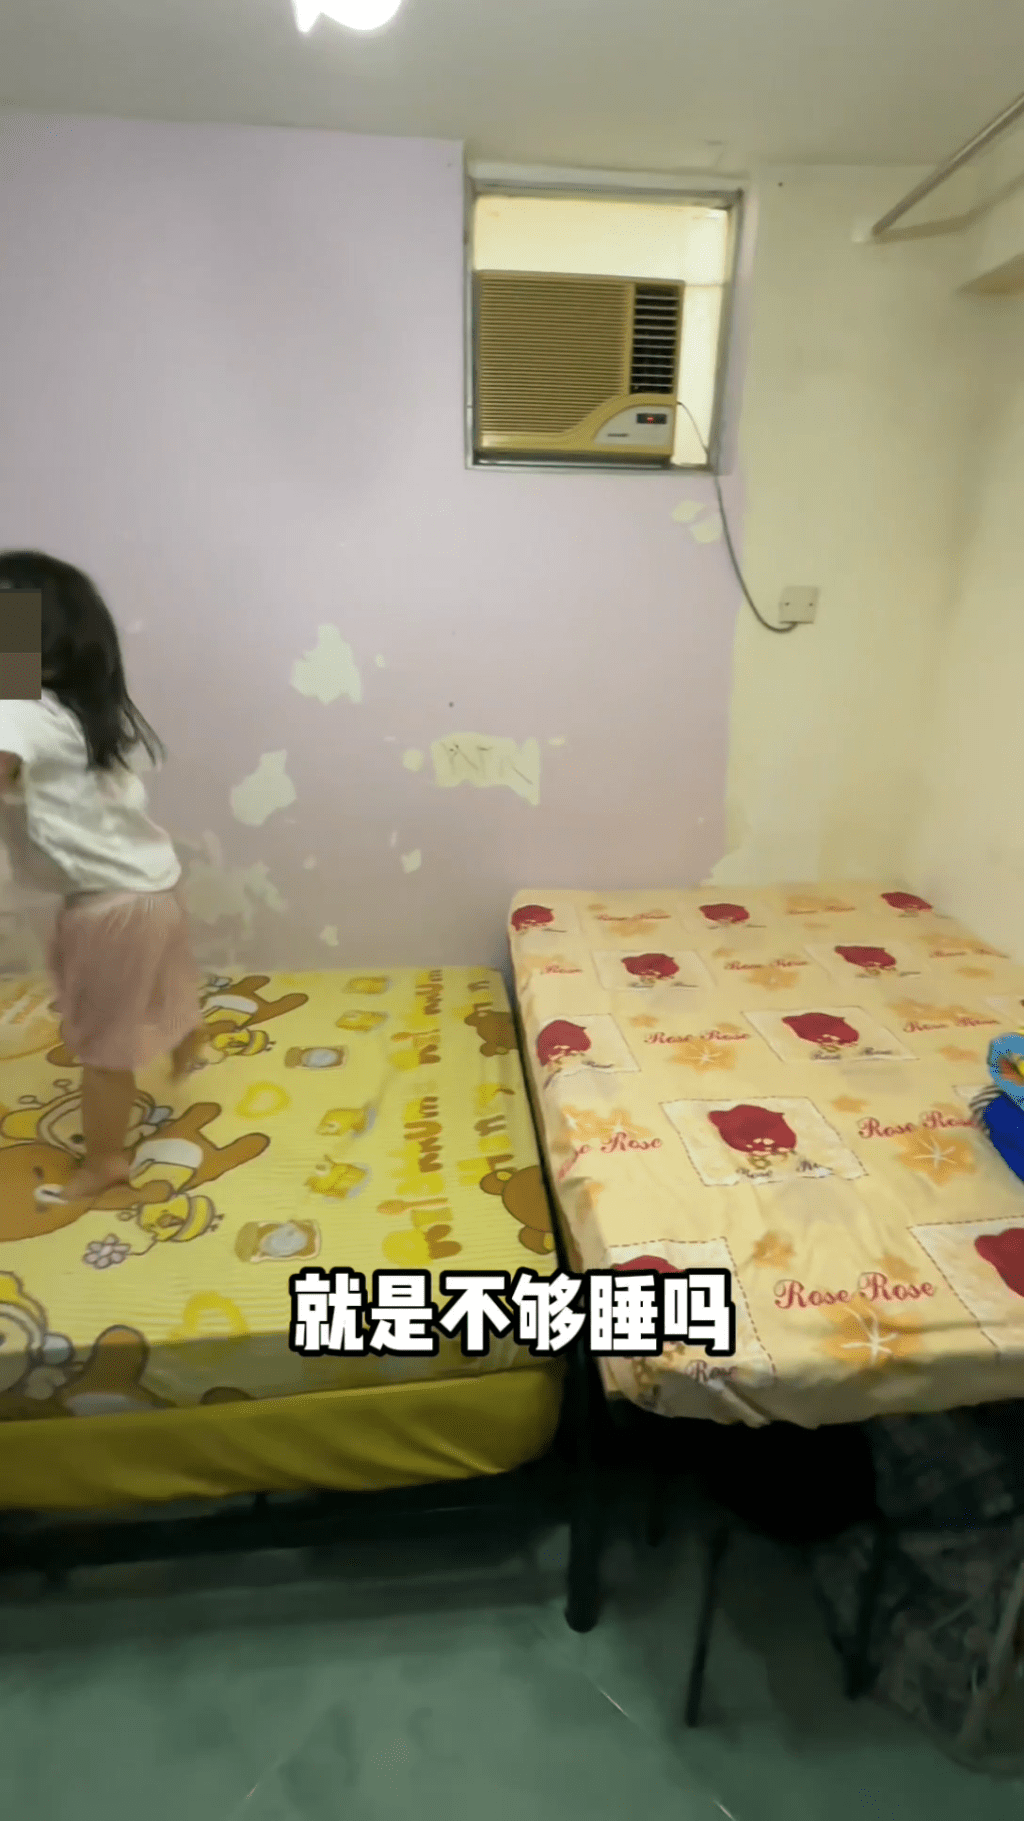 她在睡床前又加了一张小床，可供一名小孩在此睡觉。